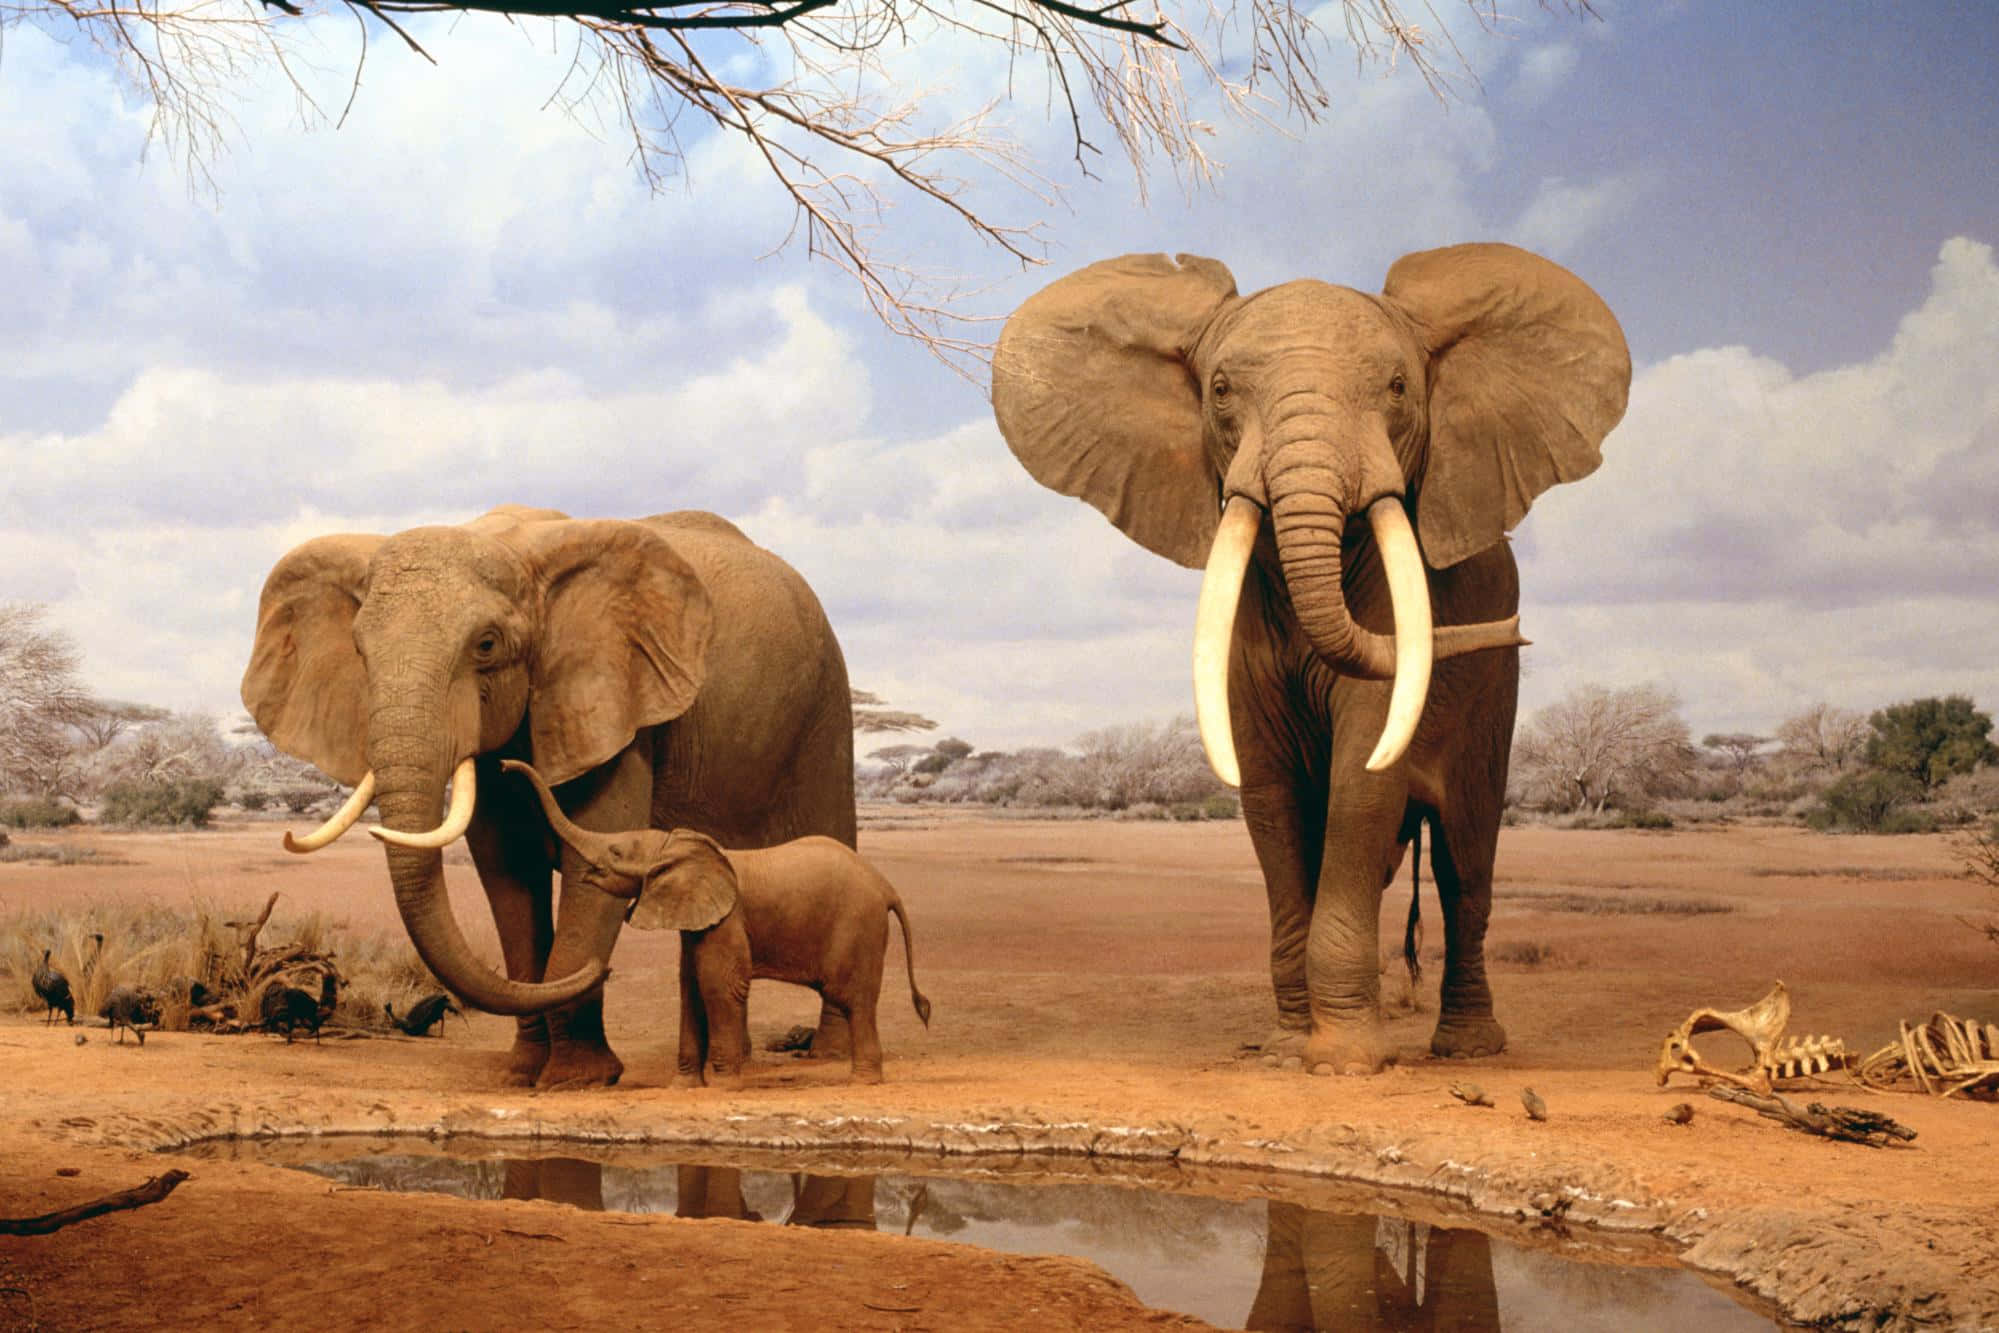 Hintergrundbildmit Afrikanischen Tieren